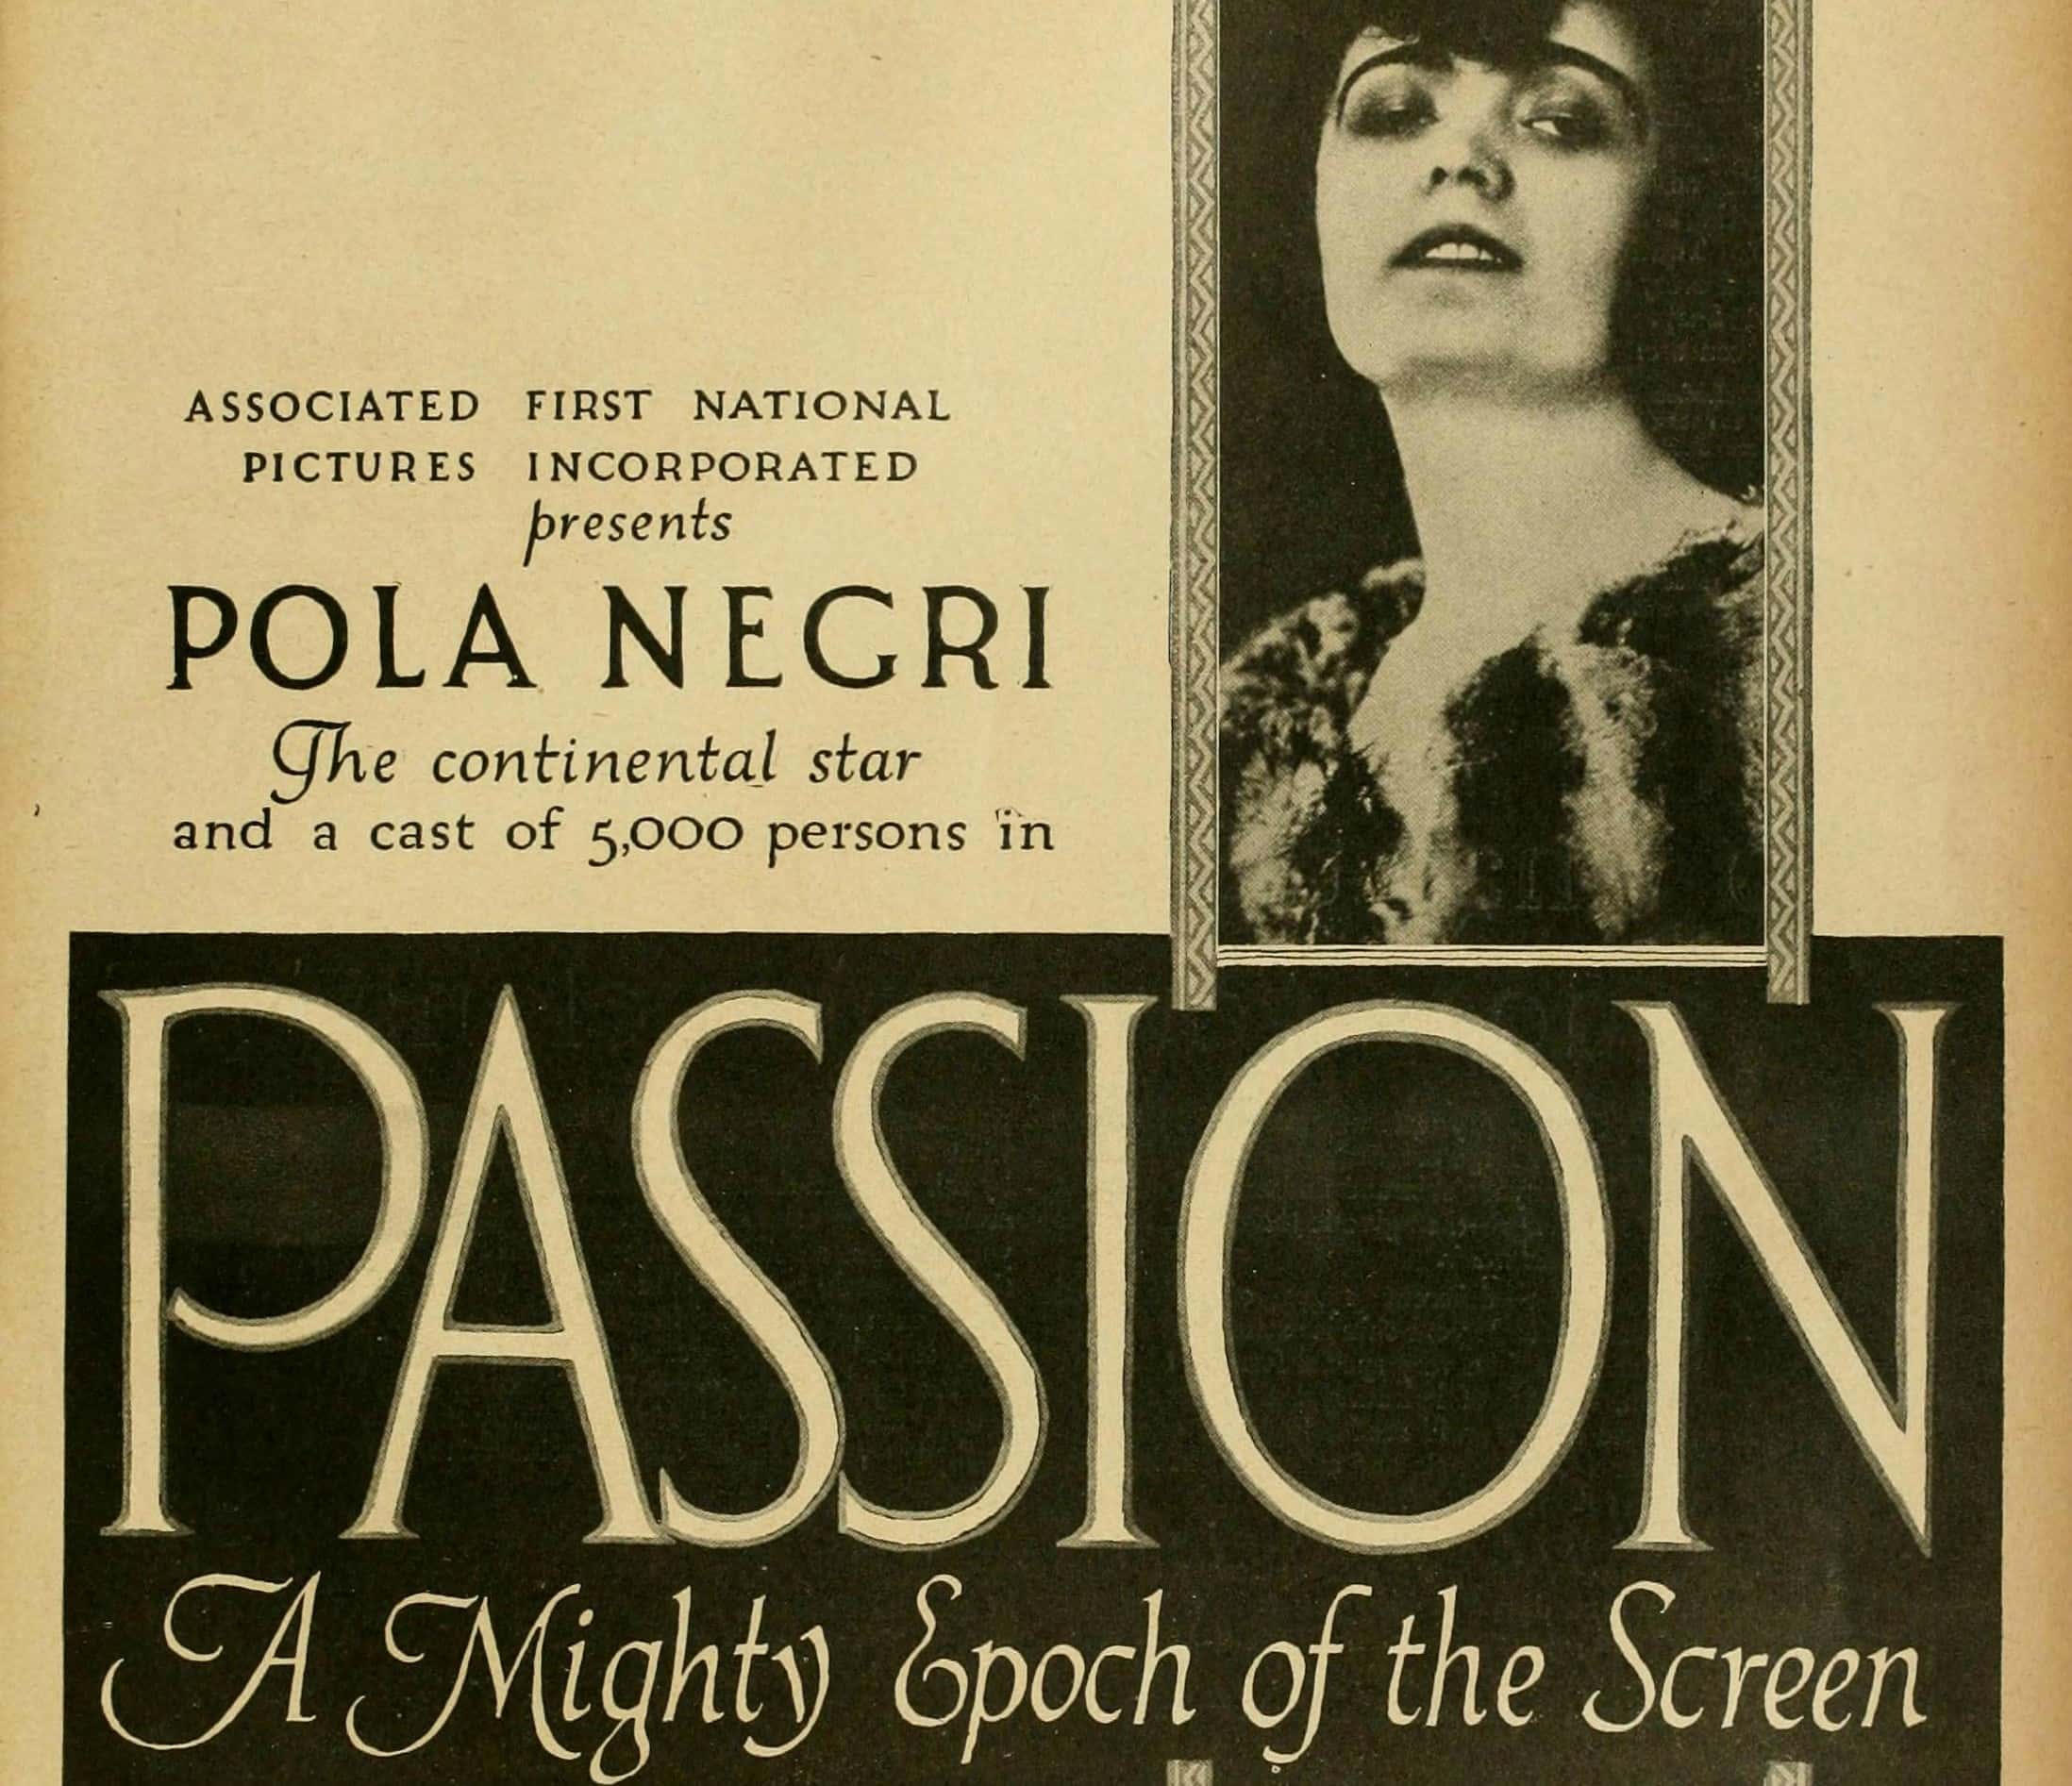 Pola Negri Facts